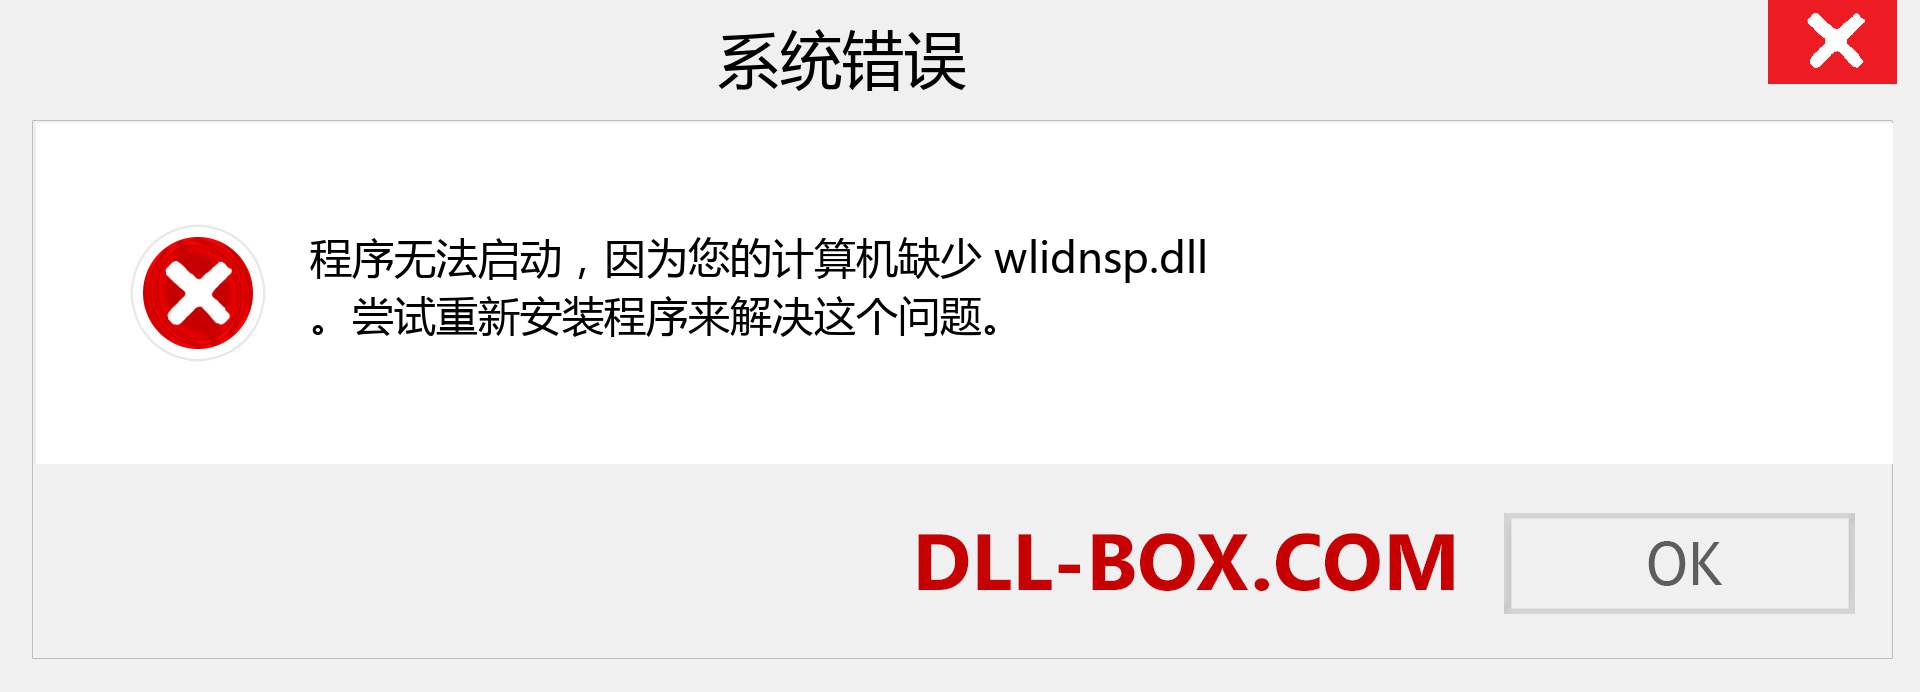 wlidnsp.dll 文件丢失？。 适用于 Windows 7、8、10 的下载 - 修复 Windows、照片、图像上的 wlidnsp dll 丢失错误